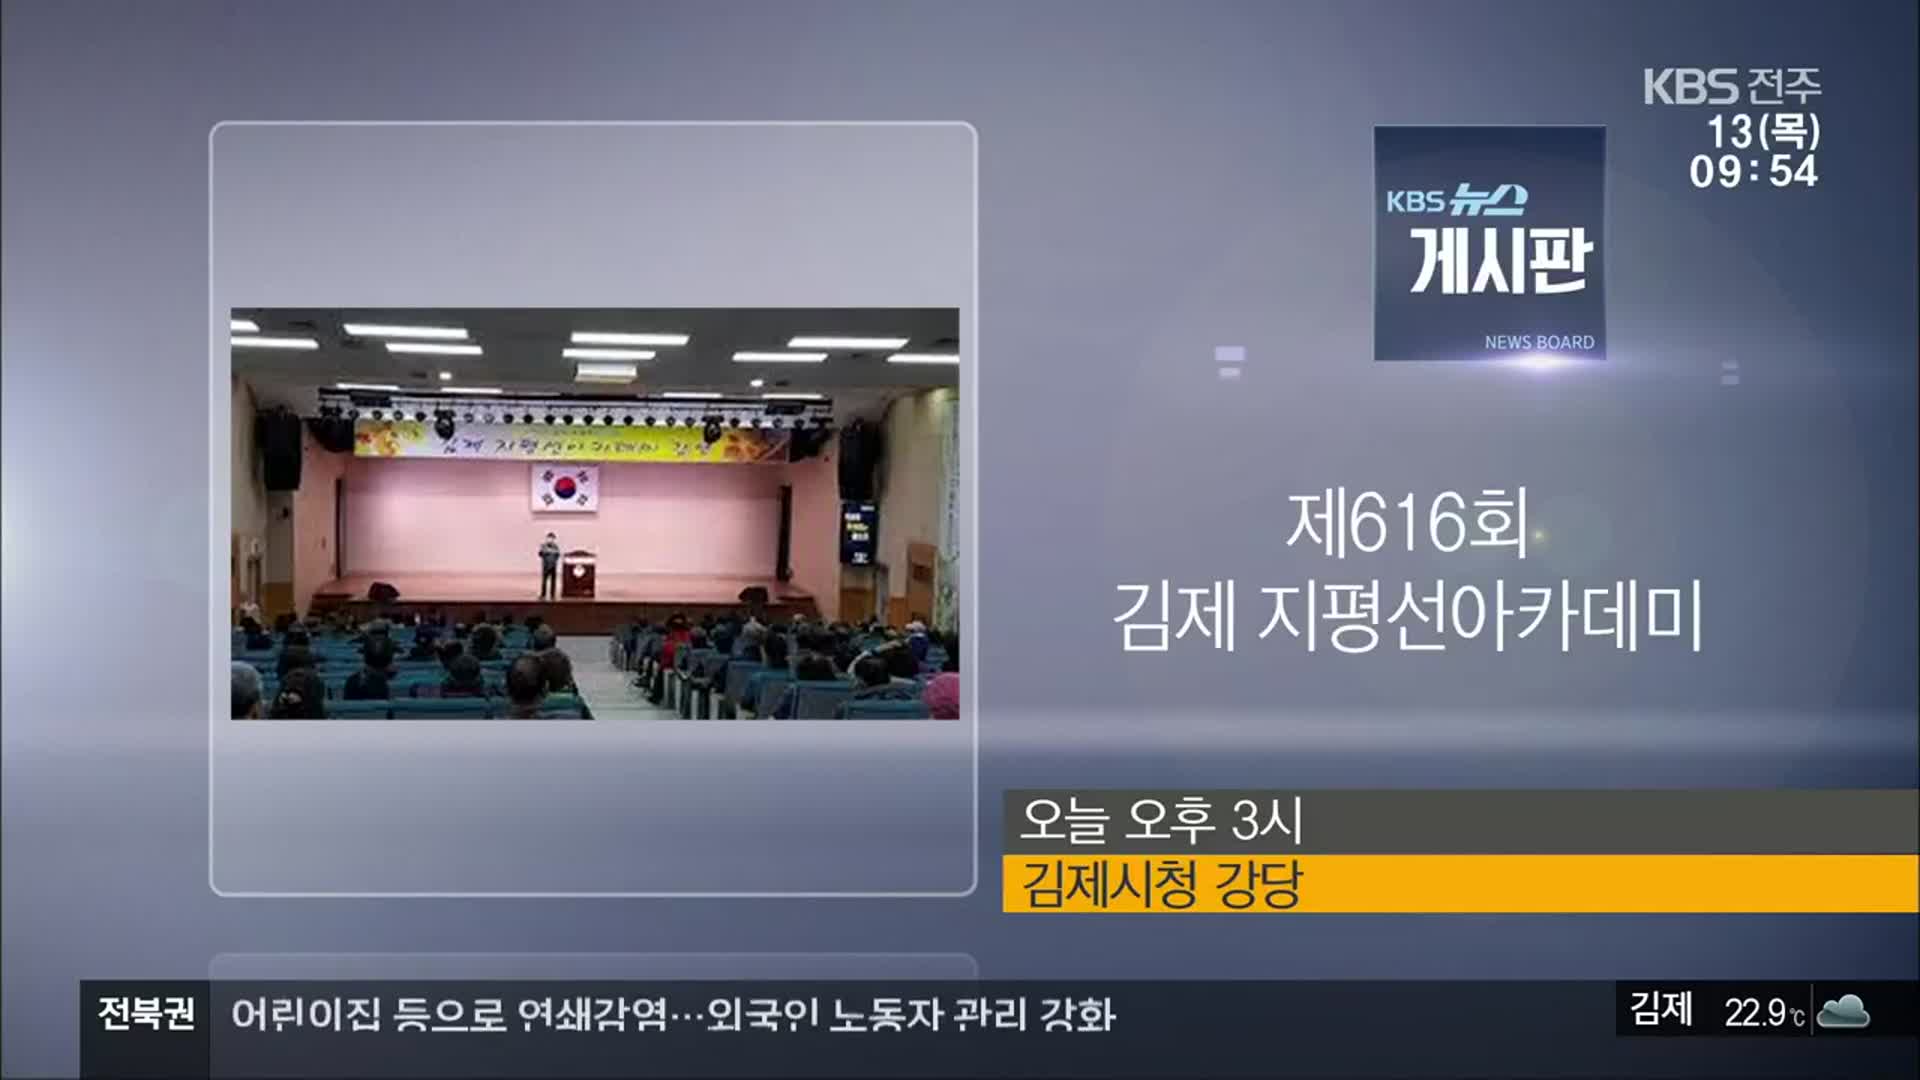 [게시판] 제616회 김제 지평선아카데미 외